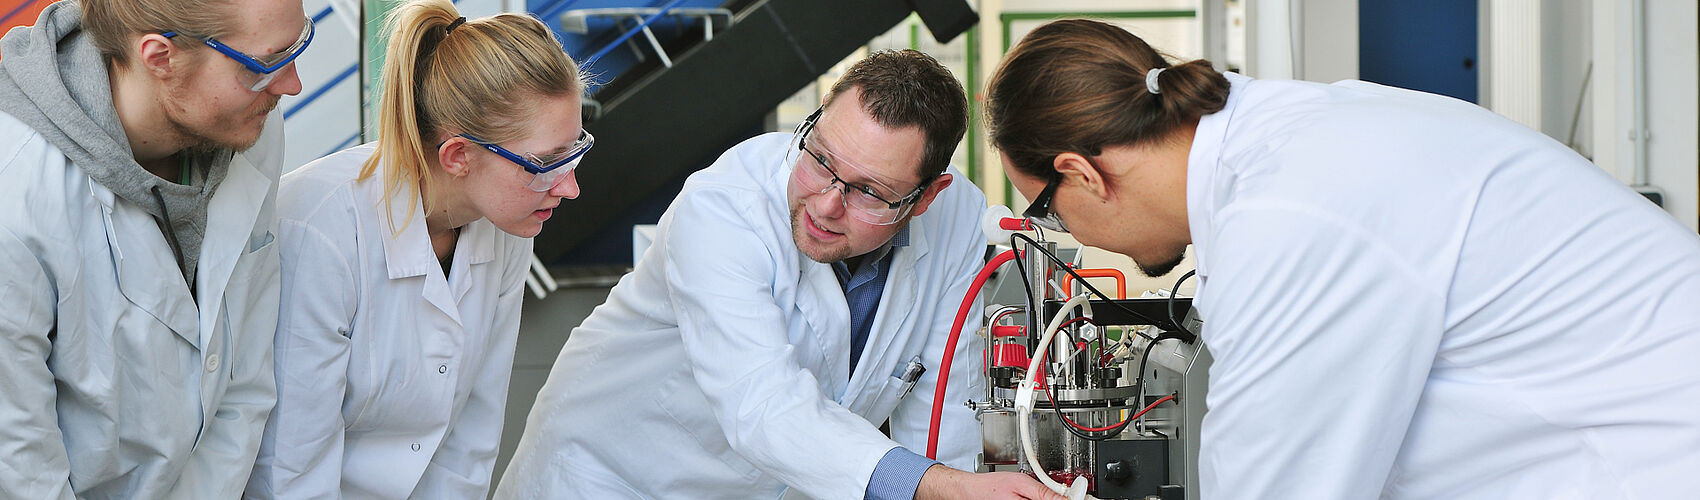 Professor Muffler im Gespräch mit Studierenden am Bioreaktor